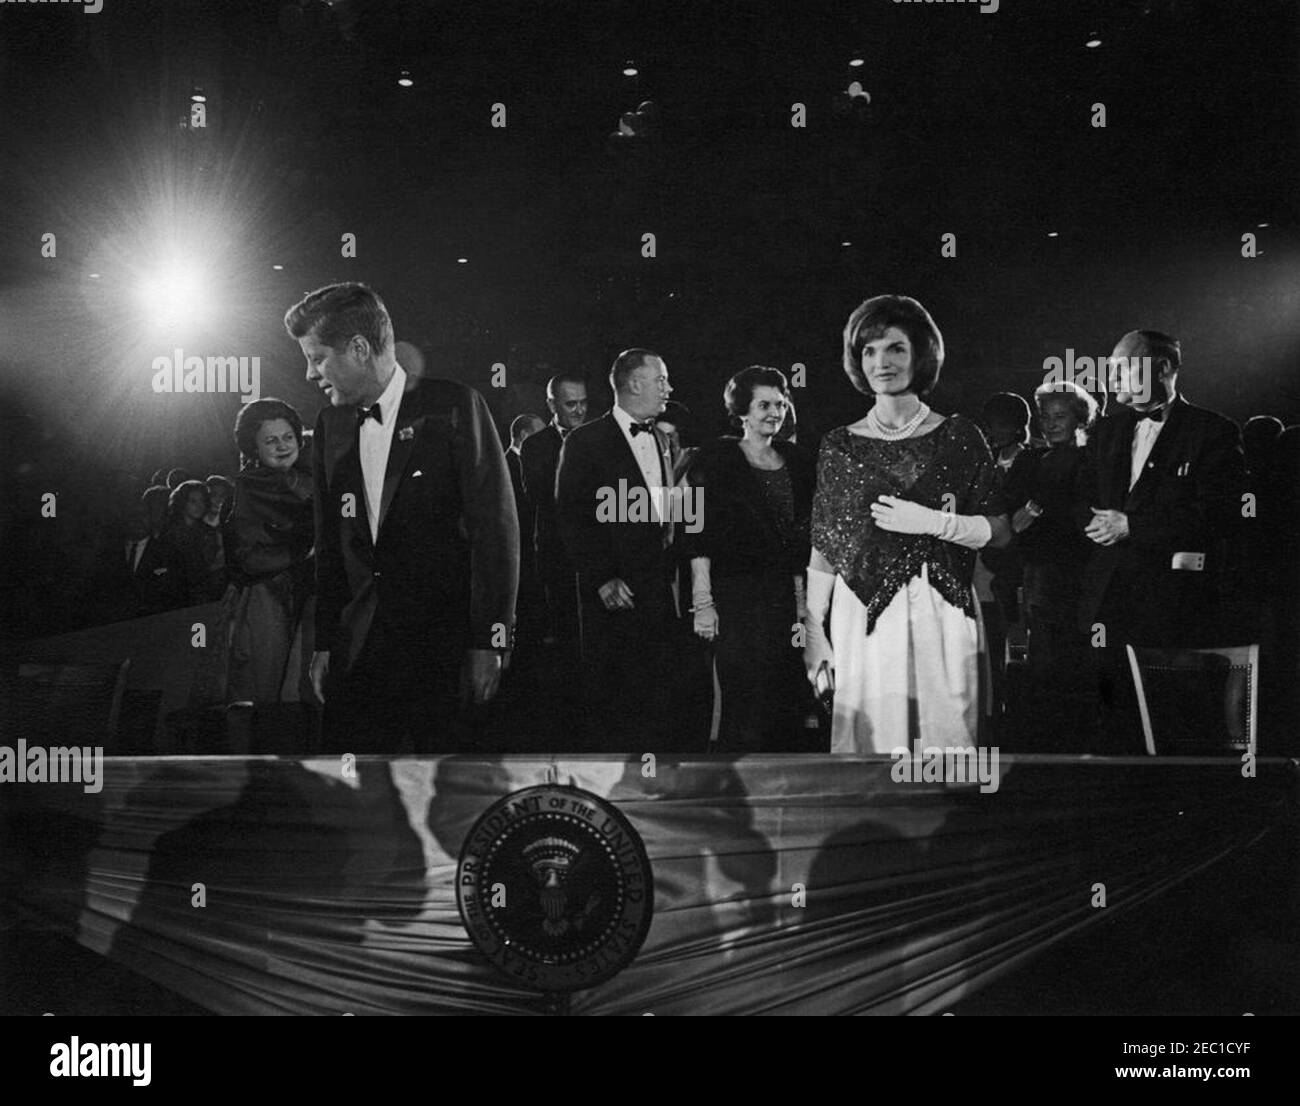 Secondo saluto inaugurale alla cena del Presidente, 19:30. Il presidente John F. Kennedy (a sinistra) e la First Lady Jacqueline Kennedy (a destra) partecipano al secondo saluto inaugurale al presidente, commemorando il secondo anniversario dell'inaugurazione del presidente Kennedyu0027s. Bedford S. Wynne, presidente dell'evento (in profilo), è a destra del presidente; il vicepresidente Lyndon B. Johnson e Lady Bird Johnson (per lo più nascosto) sono dietro il sig. Wynne. A destra della First Lady sono il presidente del Comitato Nazionale Democratico (DNC) John M. Bailey; Maureen Hayes Mansfield, moglie del senatore Mike Mansfie Foto Stock